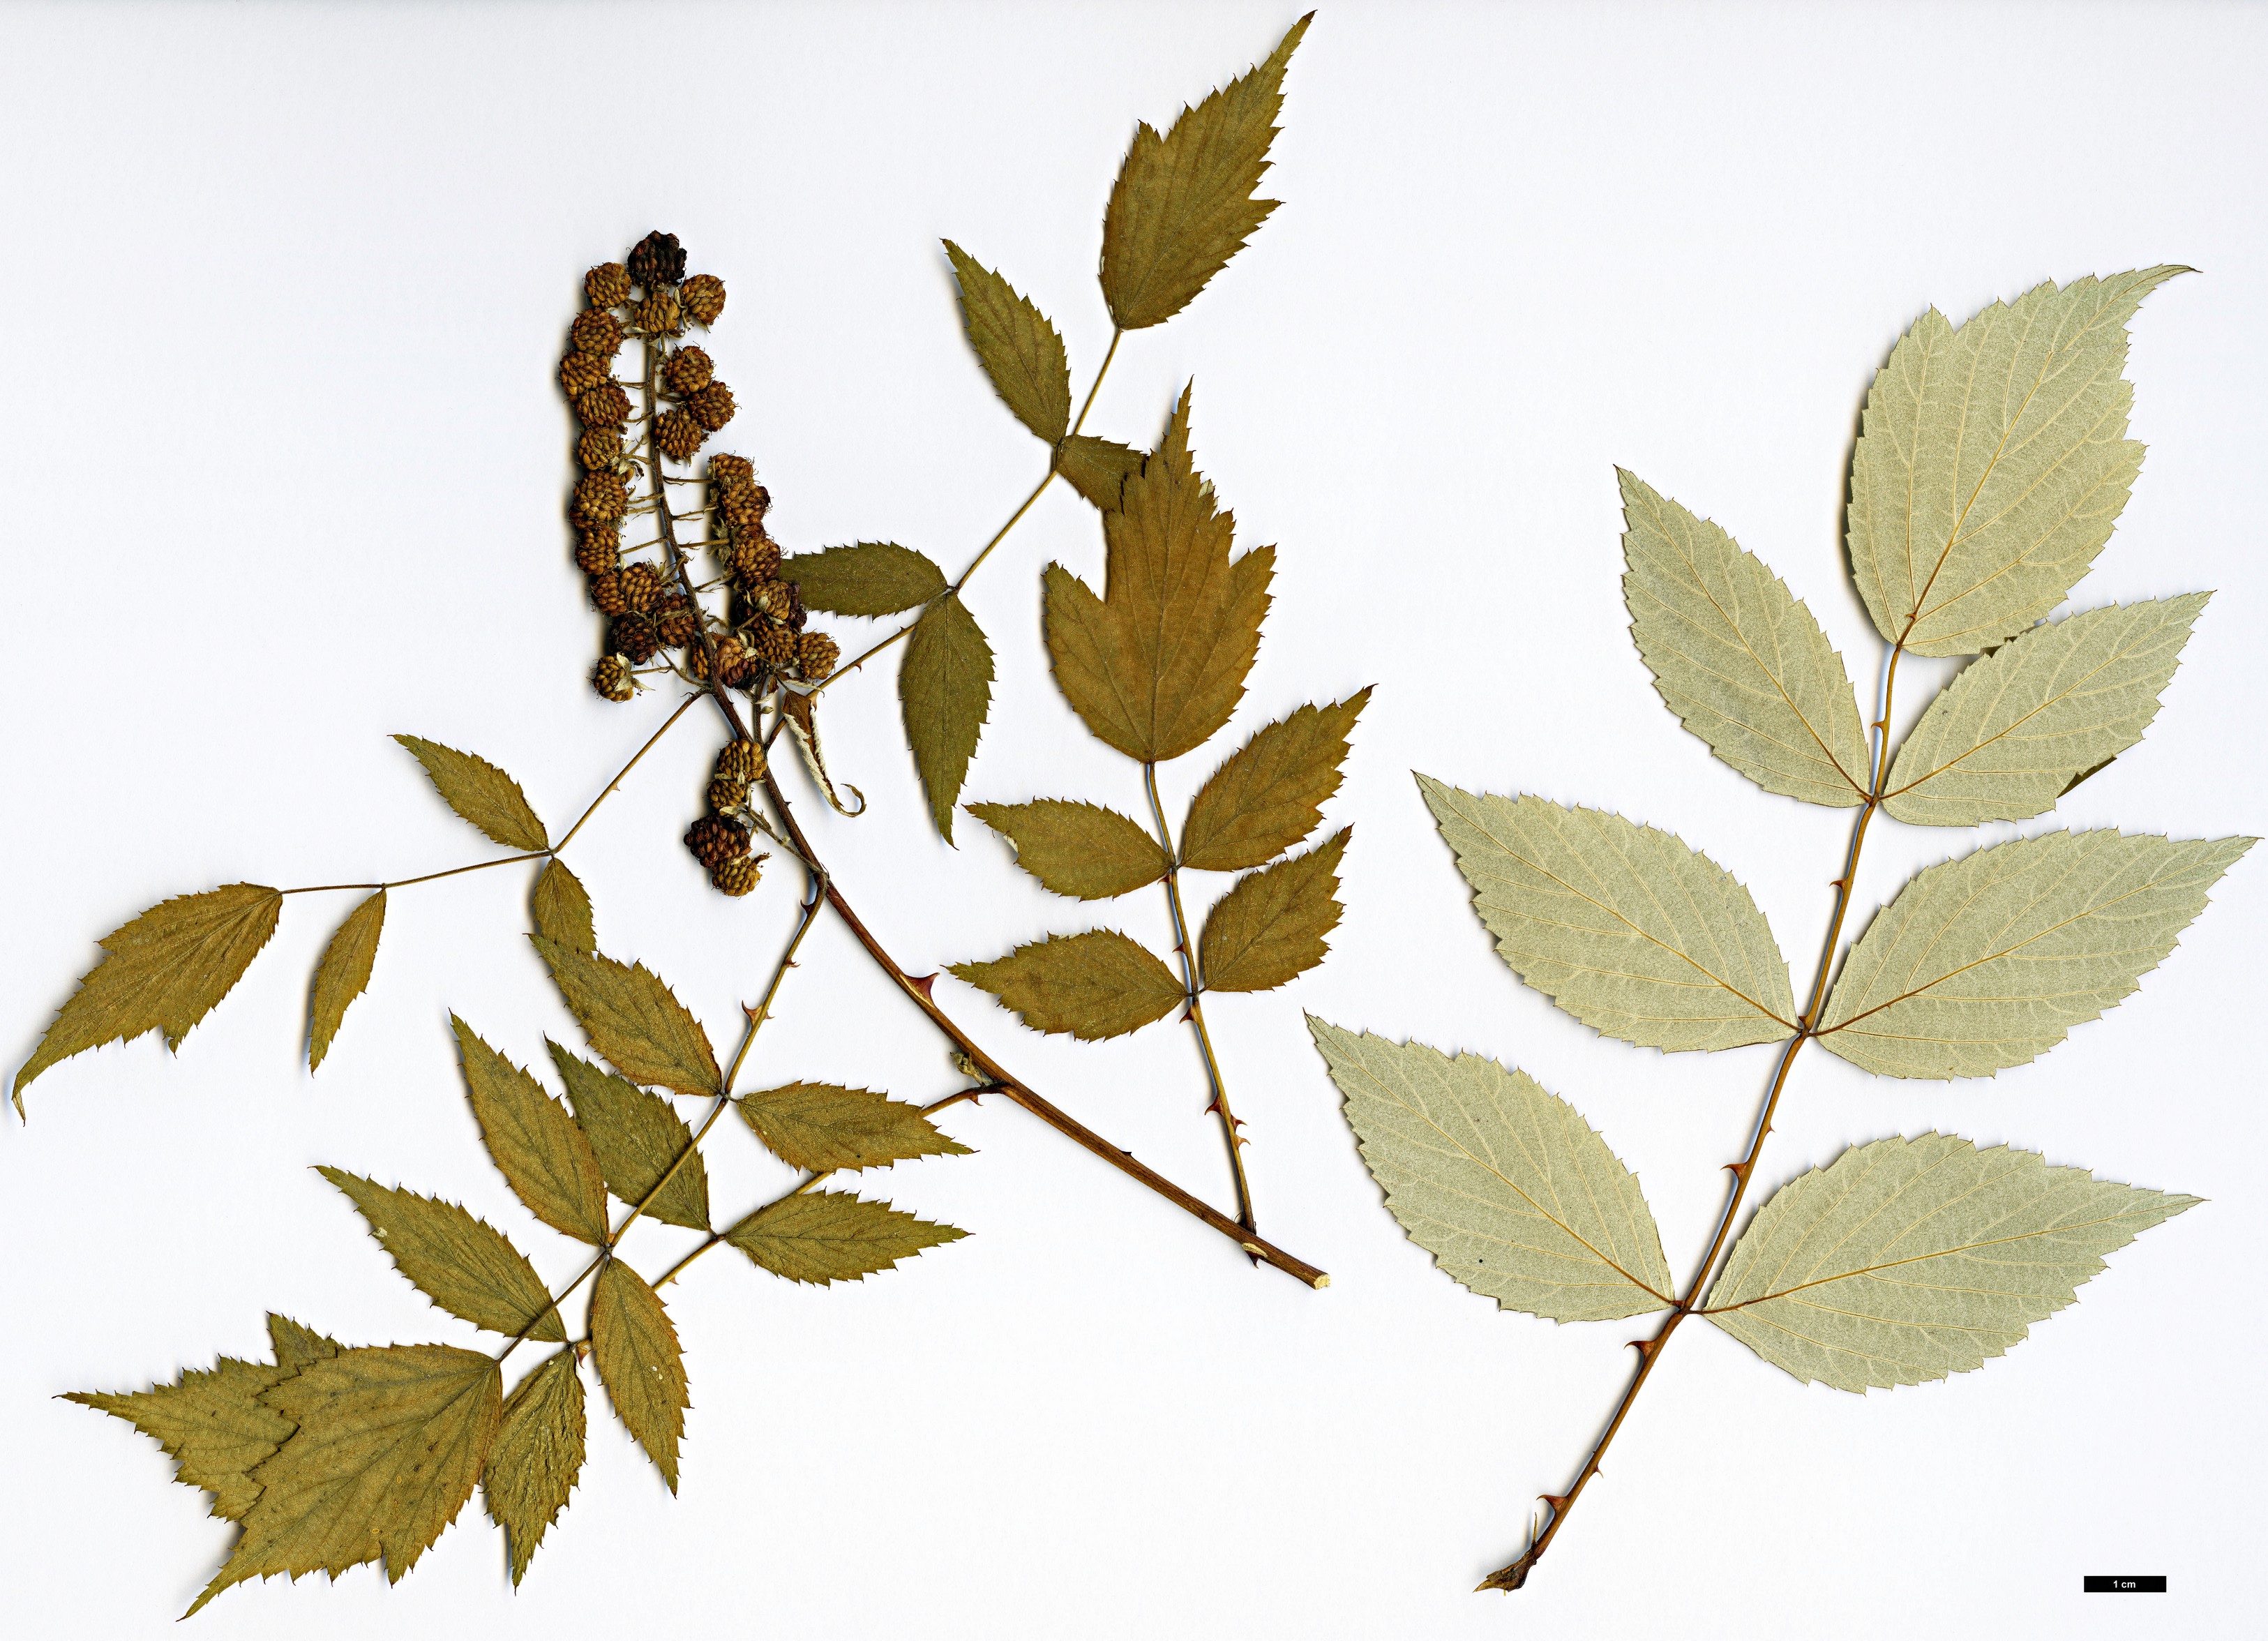 High resolution image: Family: Rosaceae - Genus: Rubus - Taxon: flosculosus